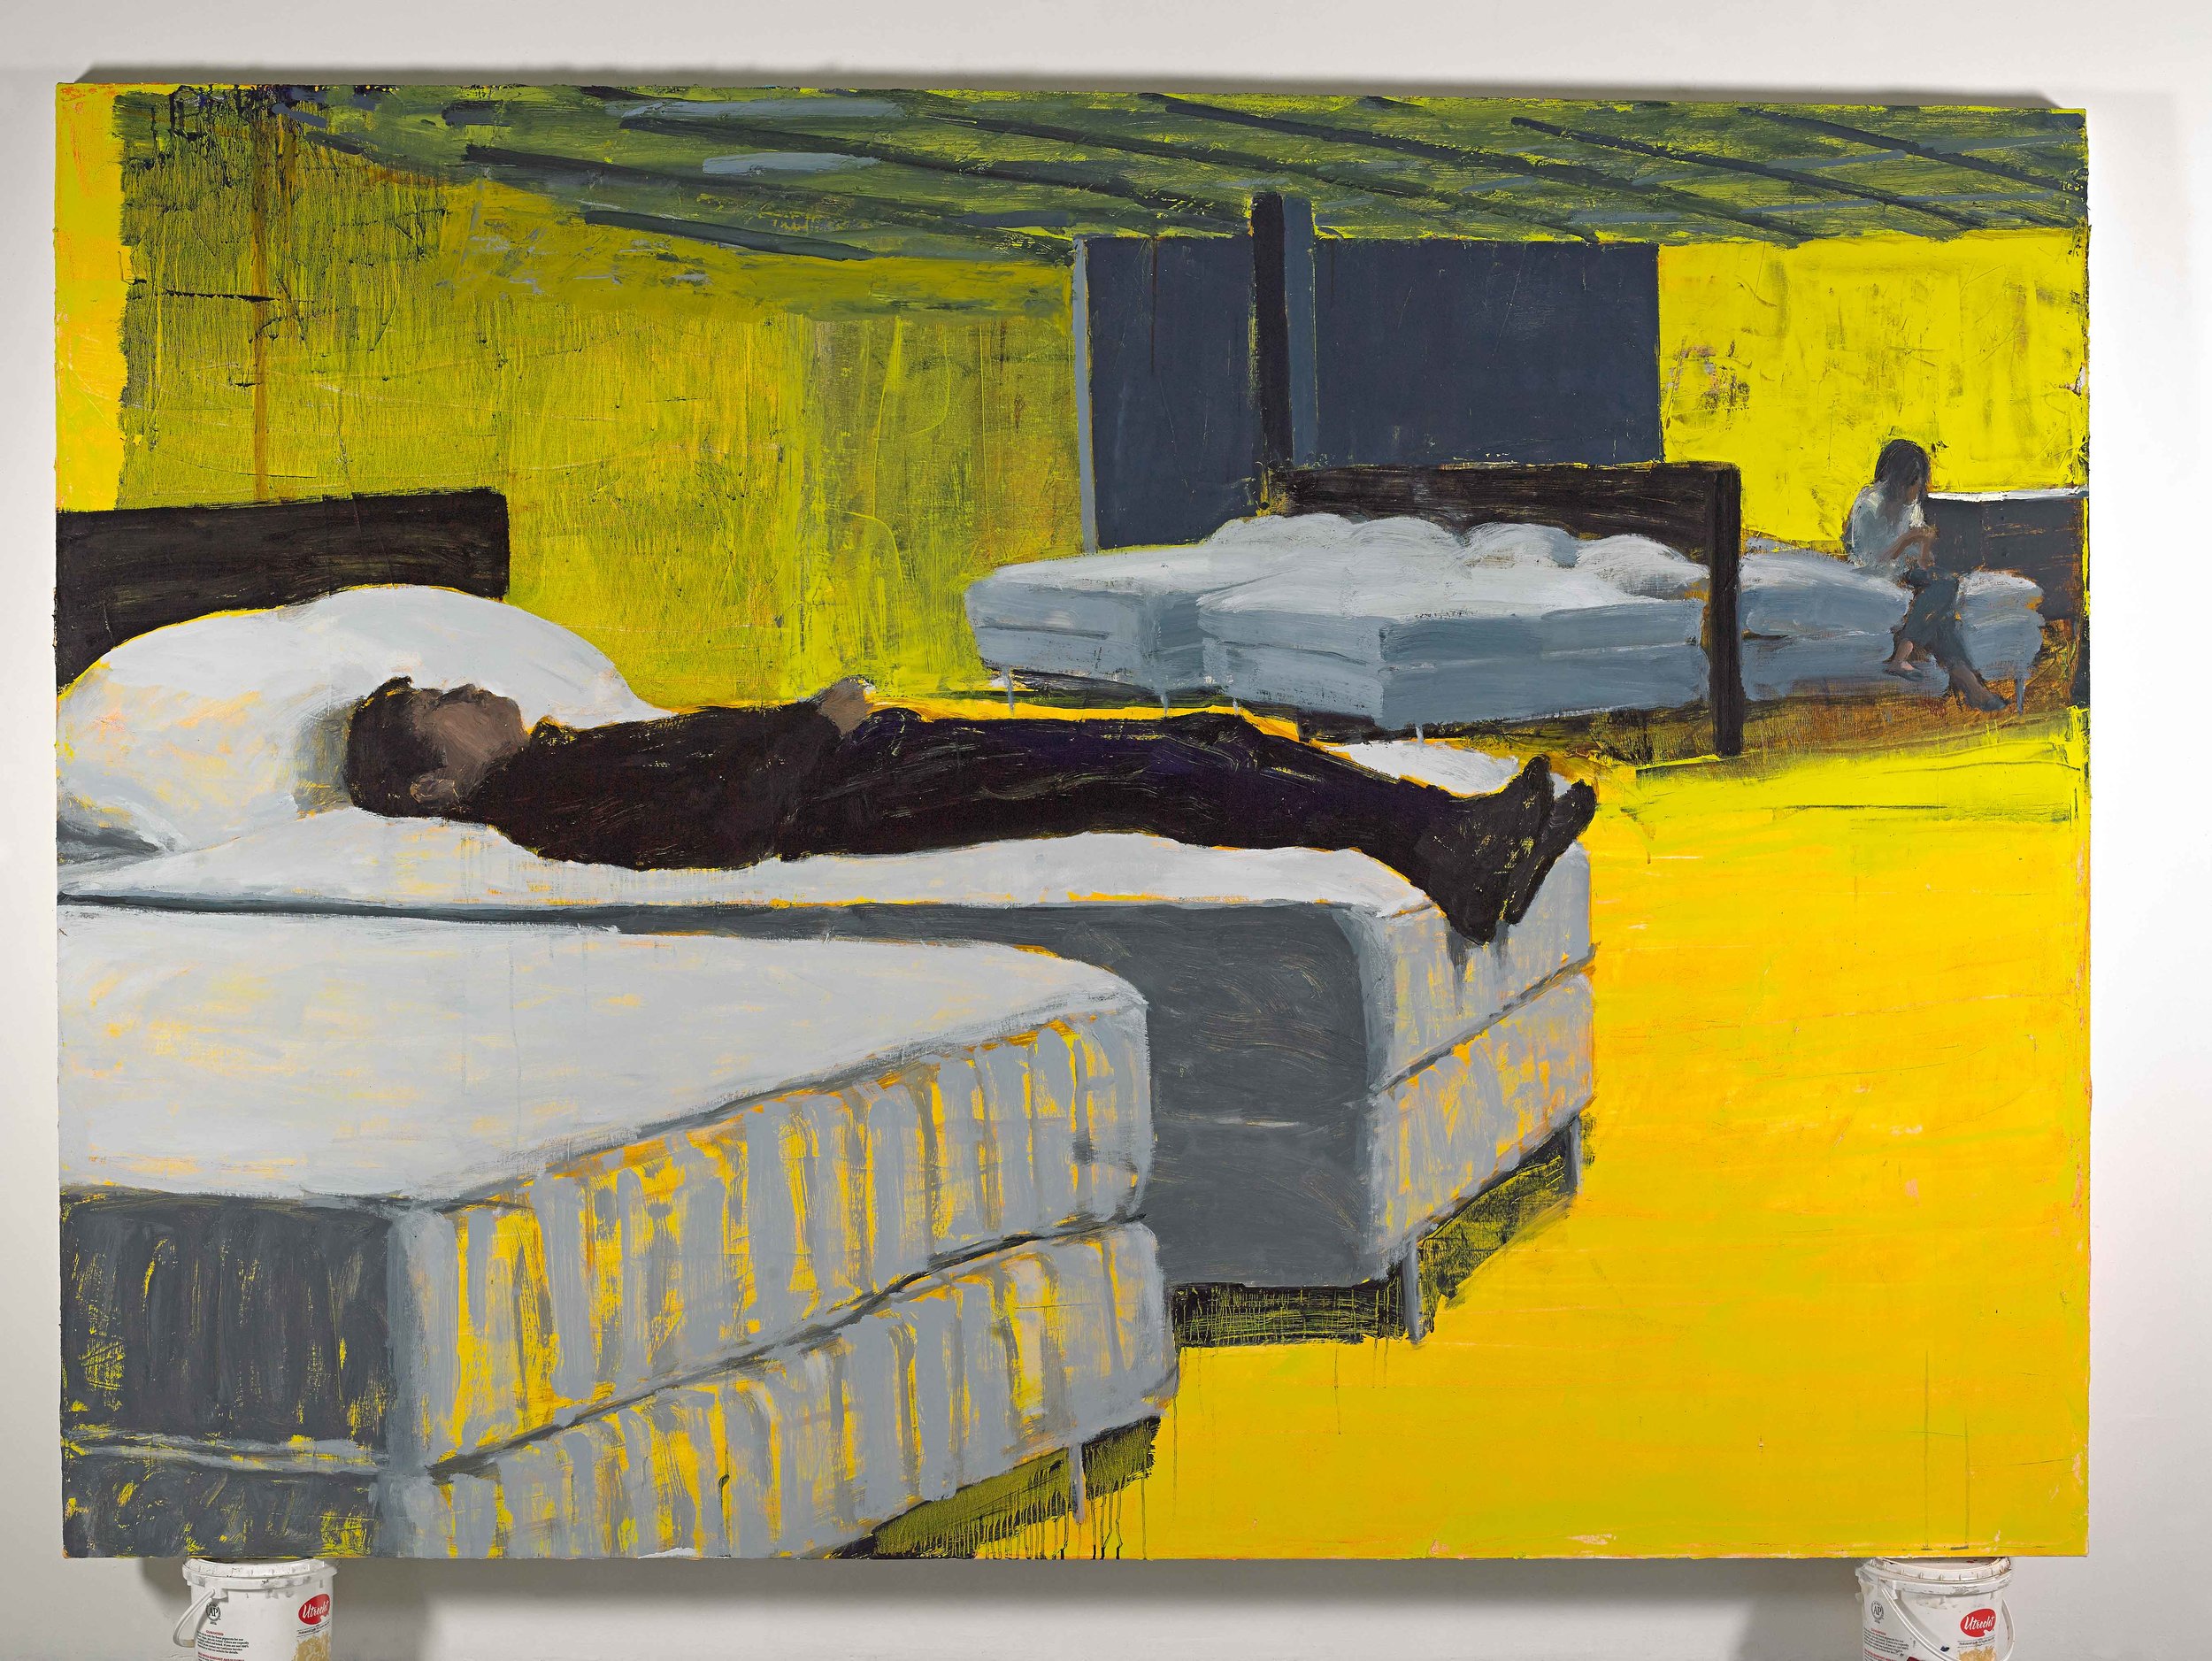 Ikea/Bedroom, 72"x100", oil on canvas, 2014